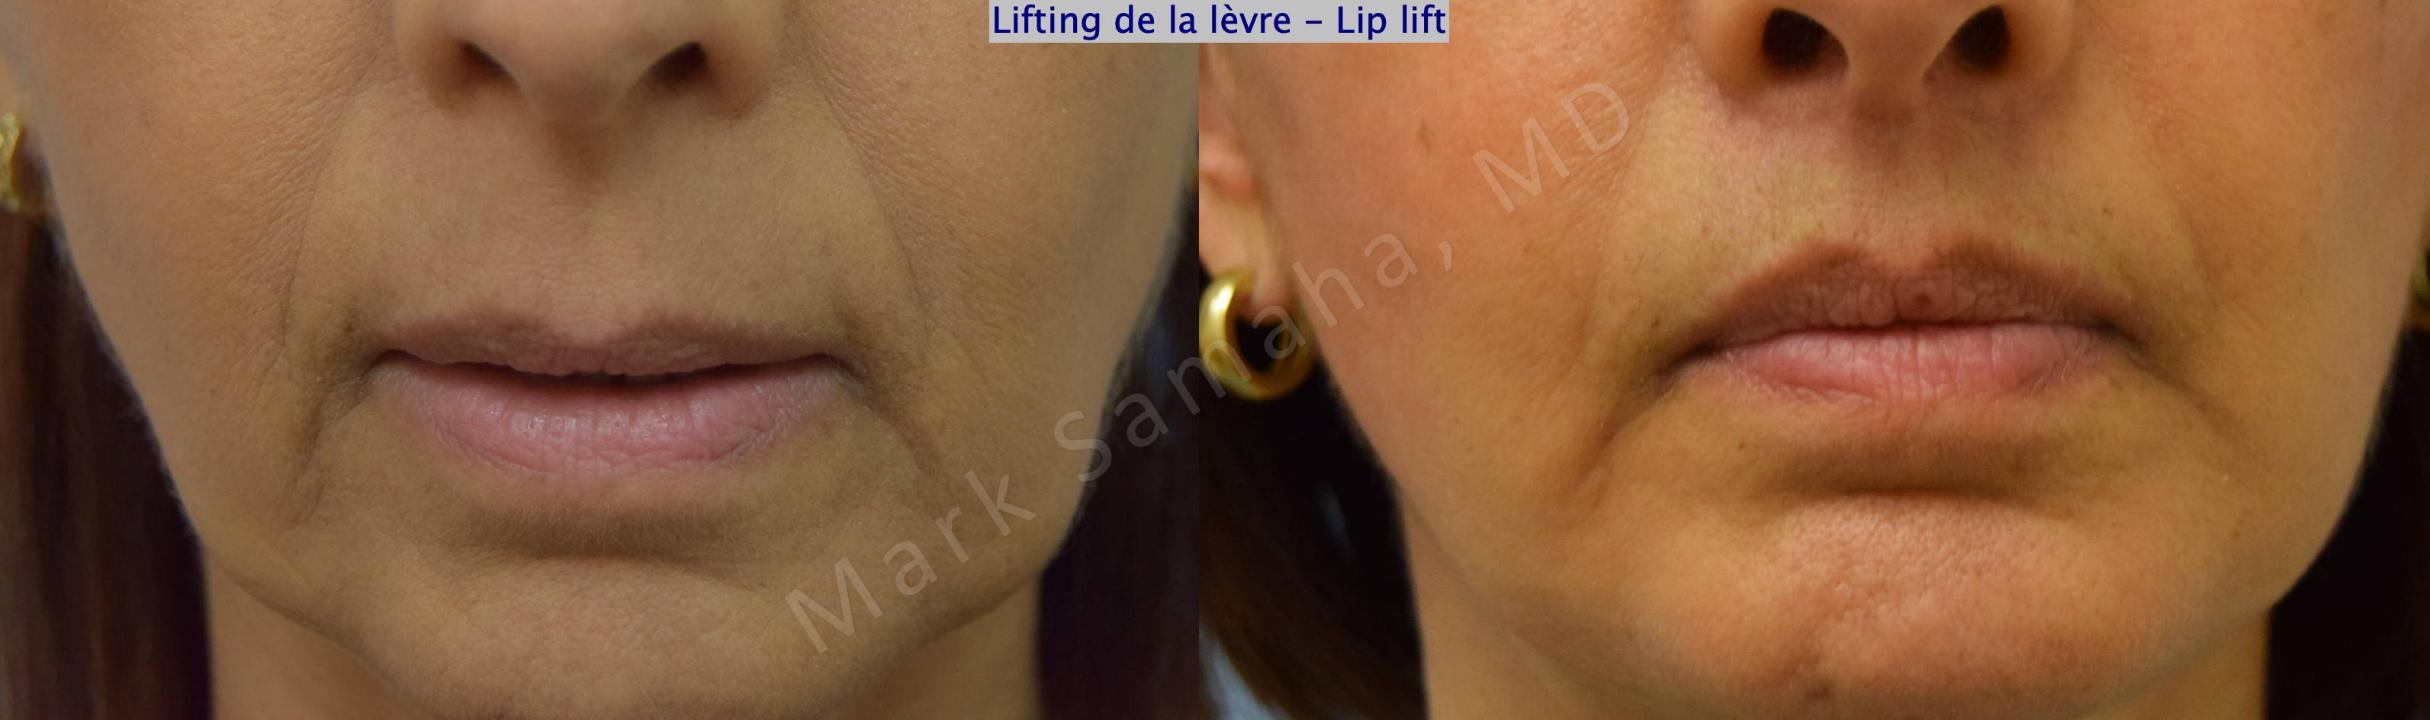 Before & After Lip Lift / Lifting de la lèvre supérieure Case 196 Front View in Mount Royal, QC